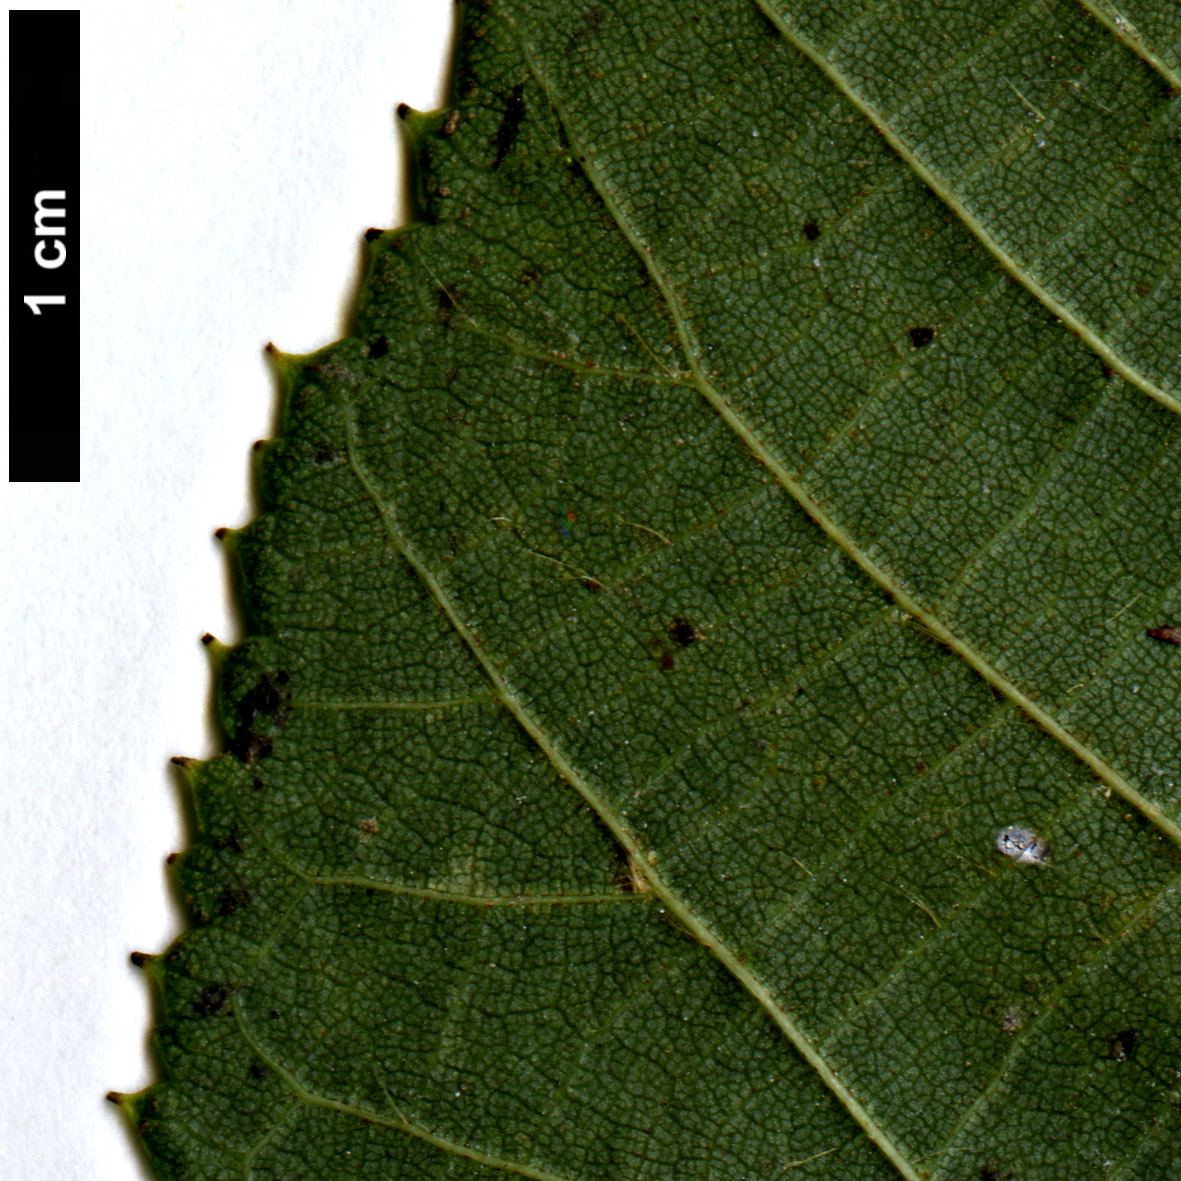 High resolution image: Family: Malvaceae - Genus: Tilia - Taxon: ×euchlora (T.cordata × T.dasystyla subsp. caucasica)